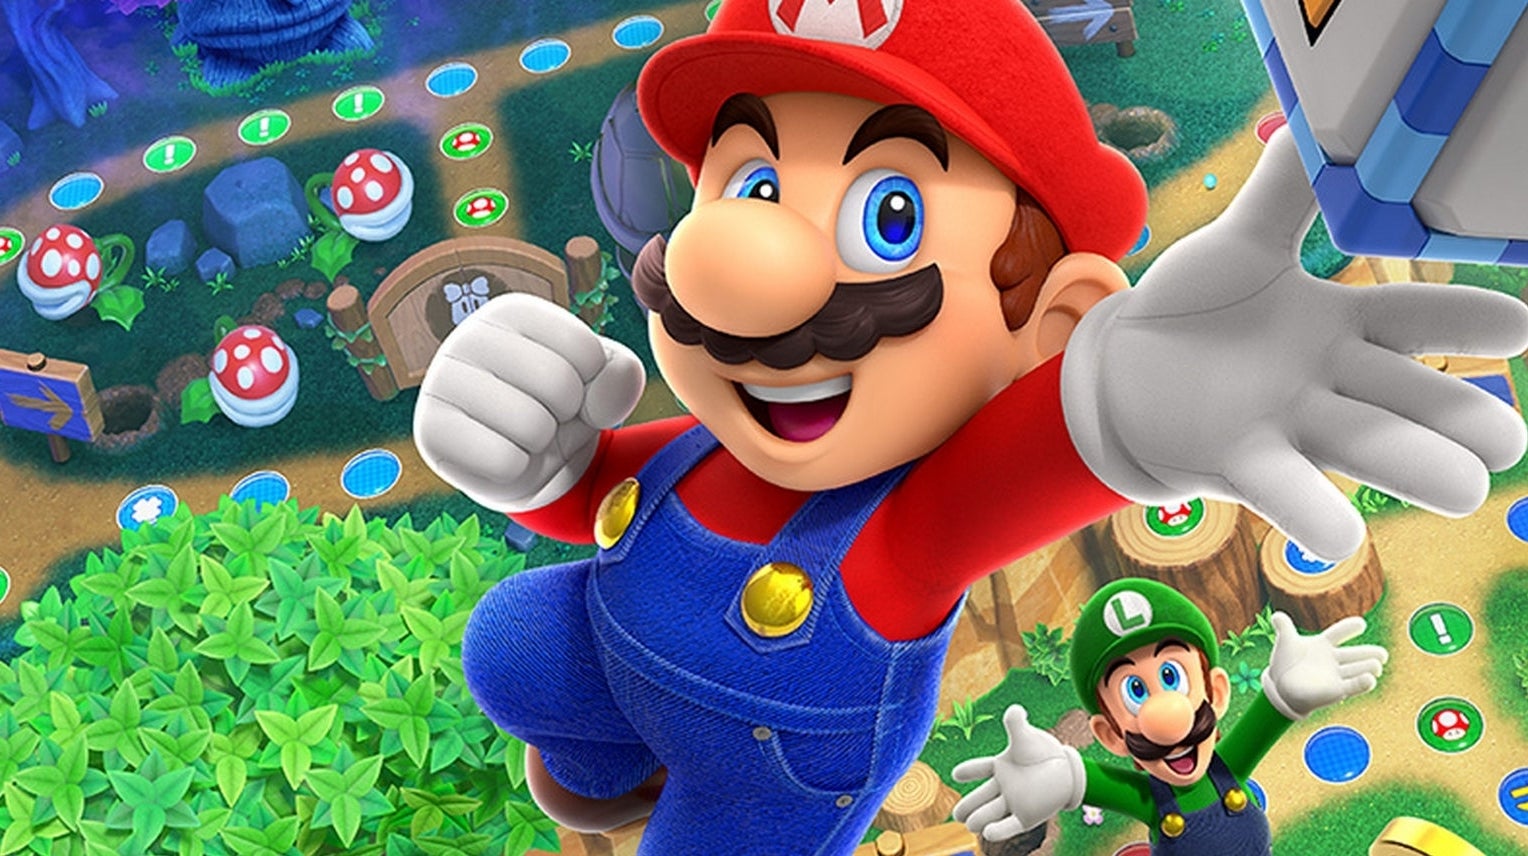 Imagen para Análisis de Mario Party Superstars - Demostrando que la saga siempre será divertida